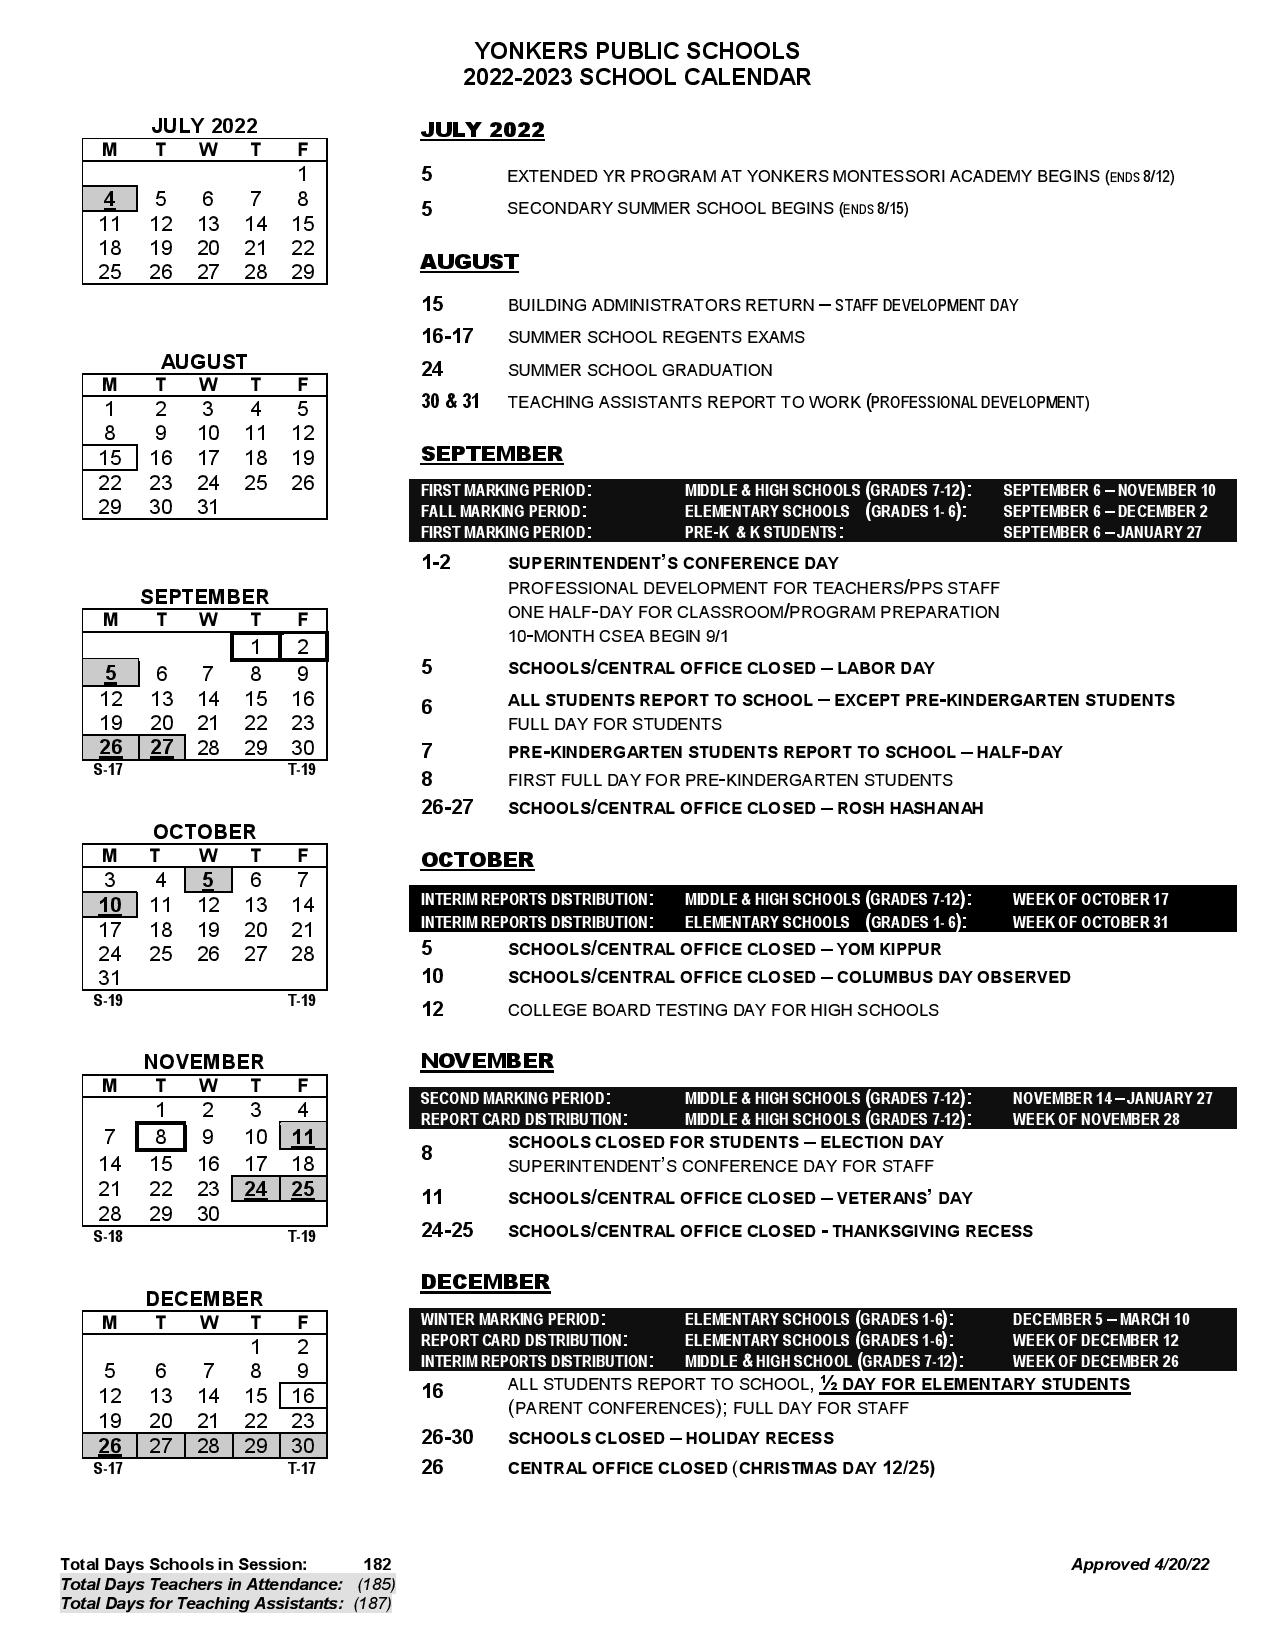 Yonkers Public Schools Calendar 20222023 in PDF